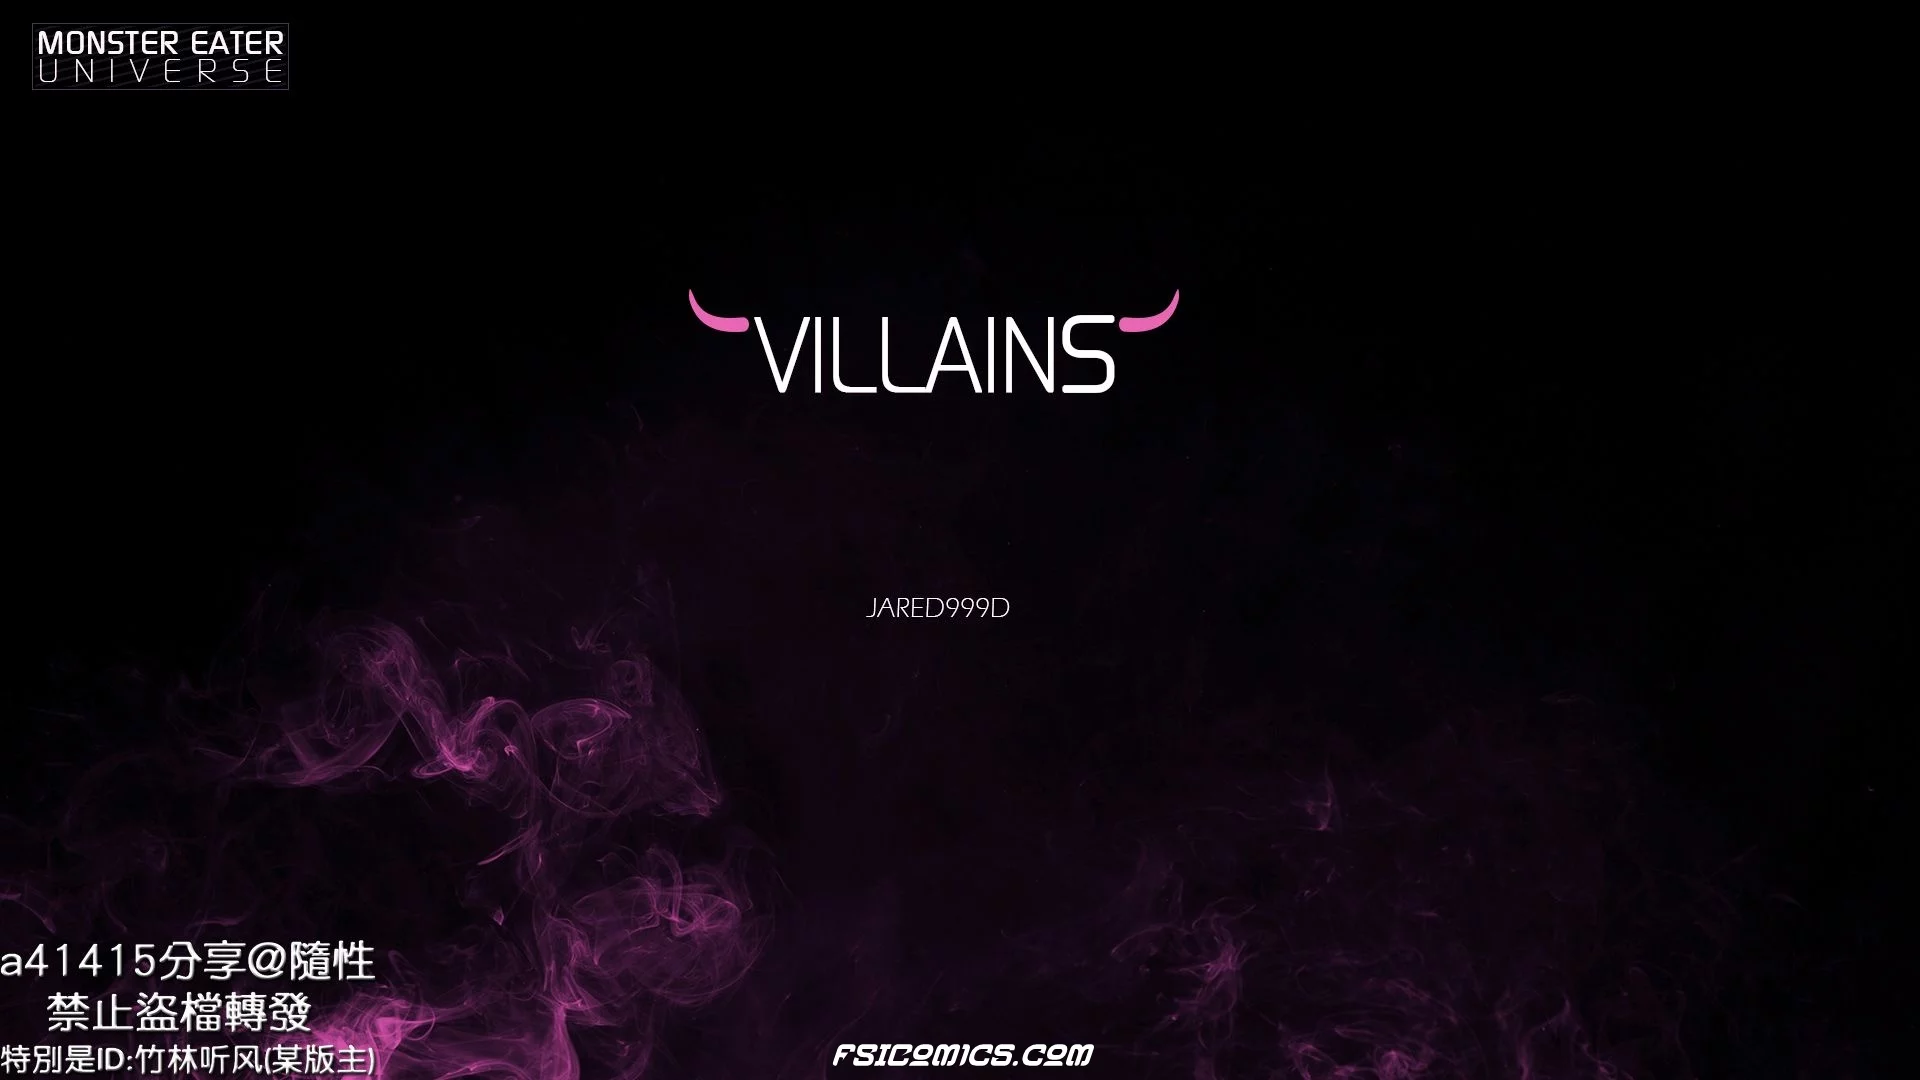 Villains Chapter 1 -Jared999D - 23 - FSIComics